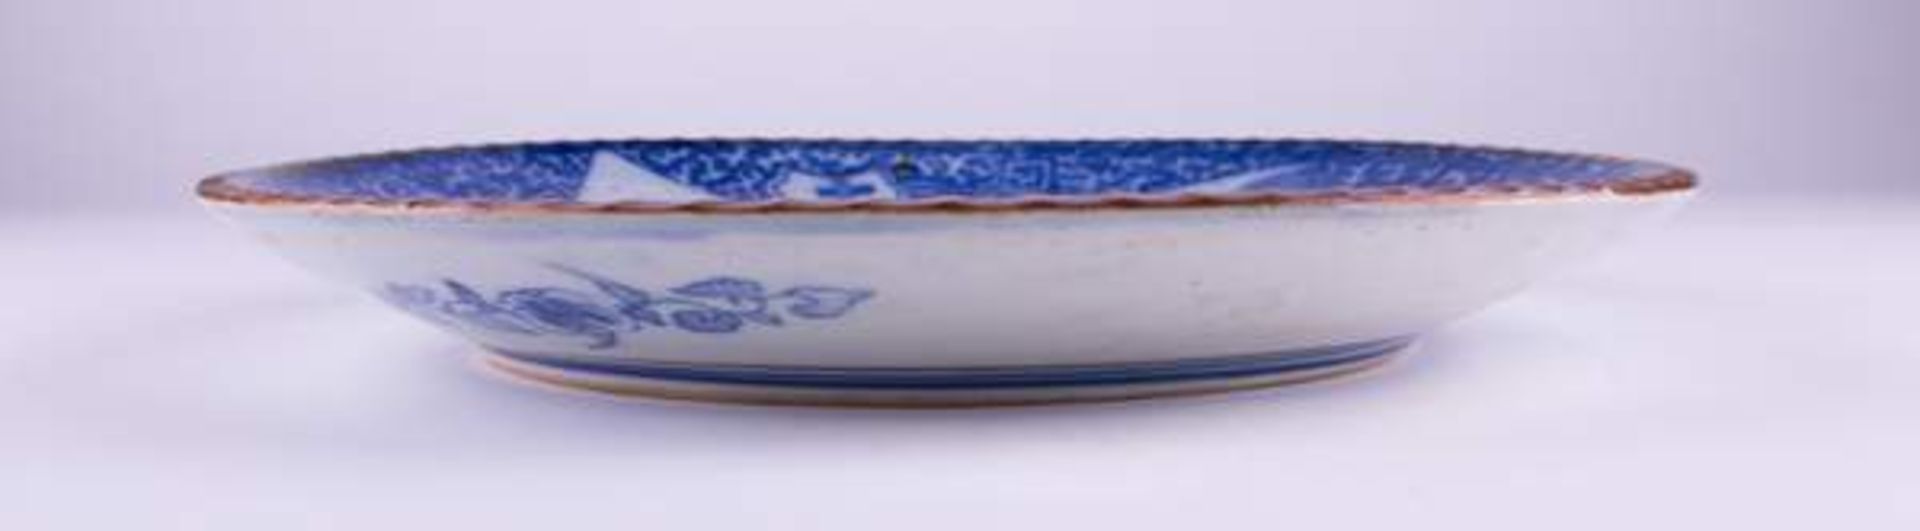 Großer Teller China 19. Jhd. / Large plate China, 19th century Unterglasurblau mit Landschafts-und - Bild 5 aus 5